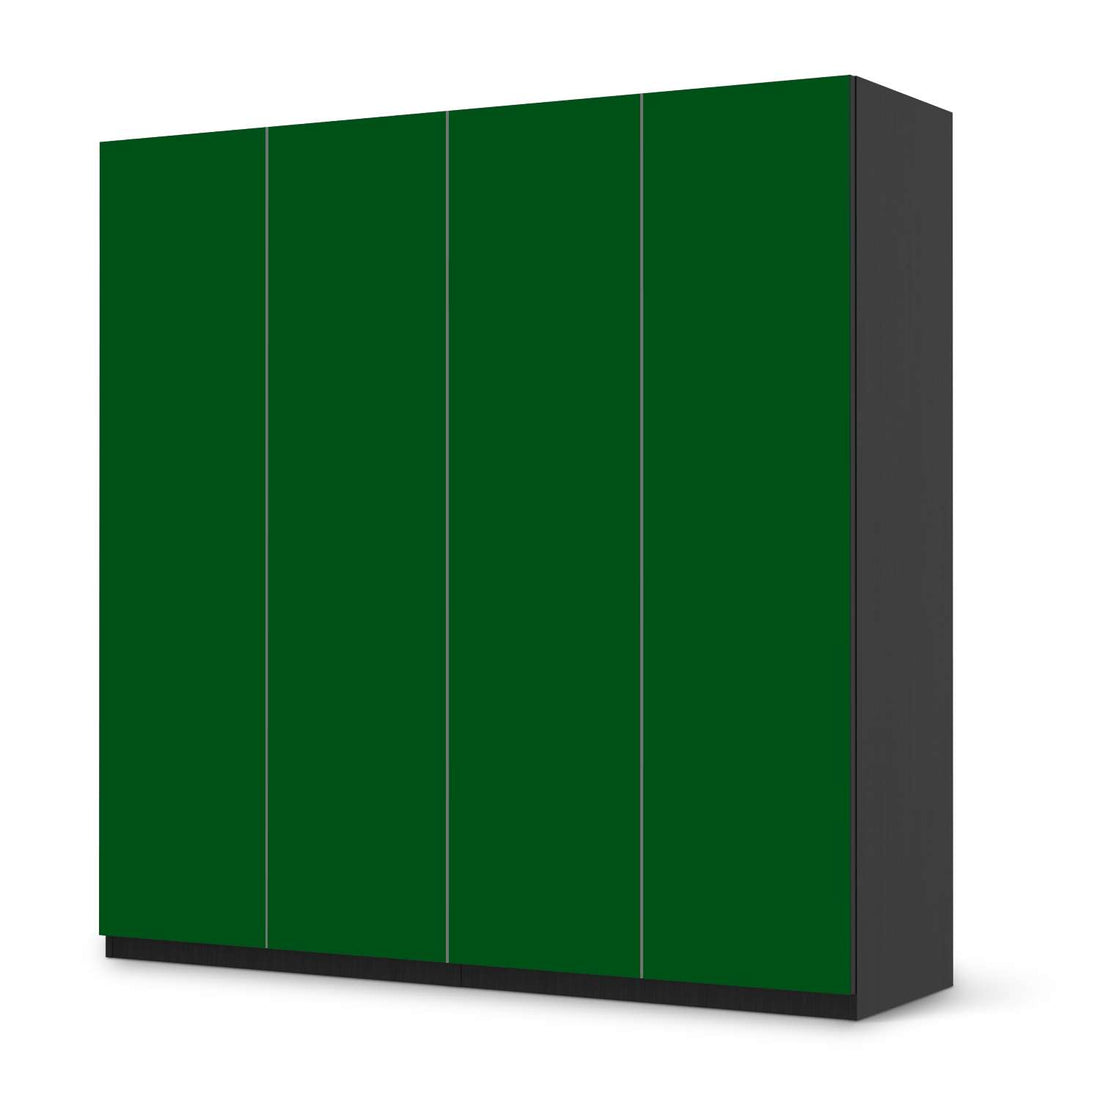 Klebefolie für Schränke Grün Dark - IKEA Pax Schrank 201 cm Höhe - 4 Türen - schwarz